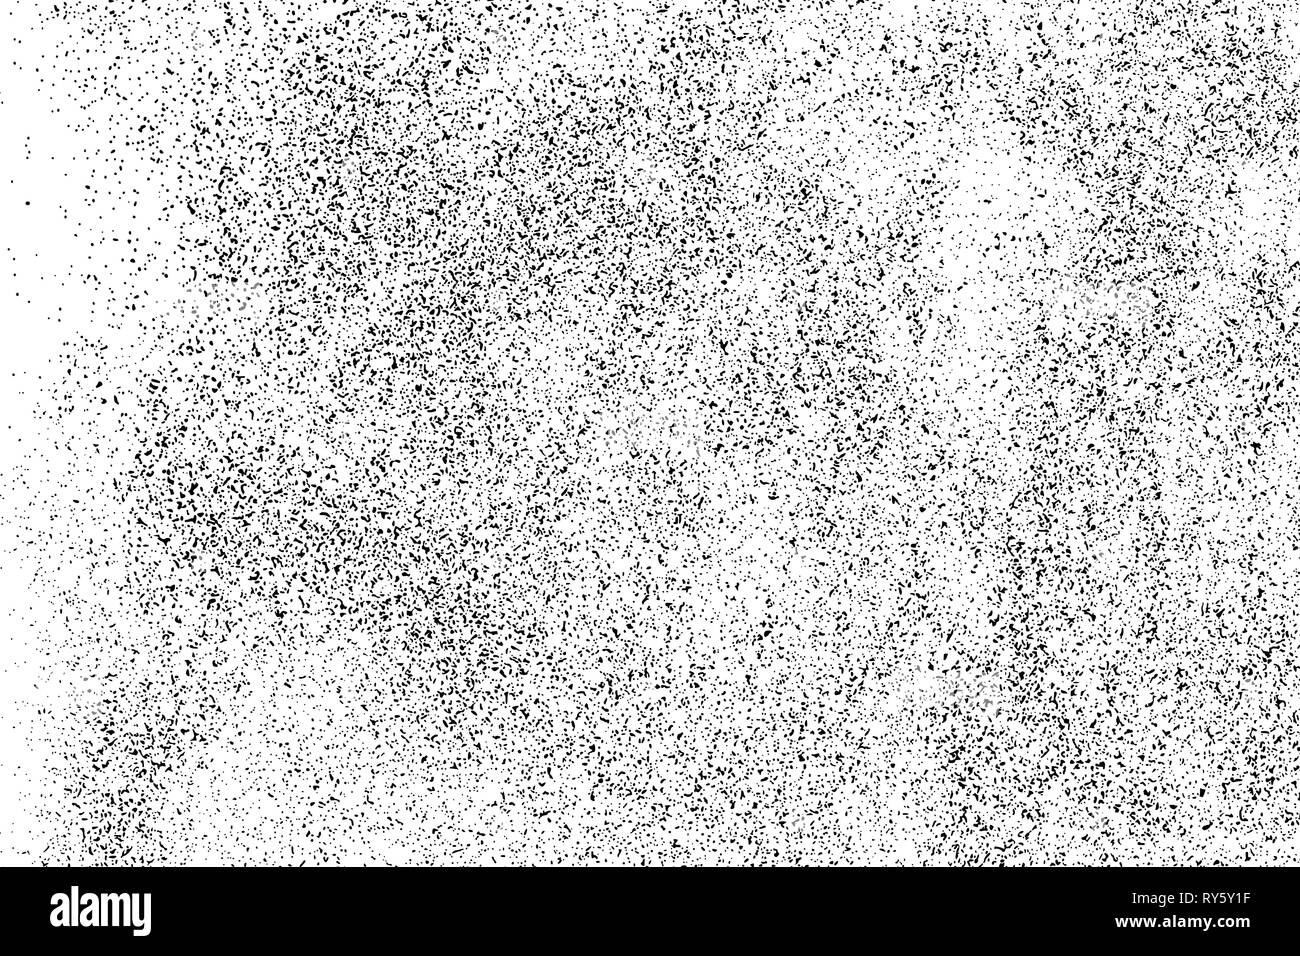 Negro de textura granulosa aislado sobre fondo blanco. Superposición de polvo. El ruido oscuro gránulos. Imagen generada digitalmente. Elementos de diseño vectorial, ilustración, Ilustración del Vector